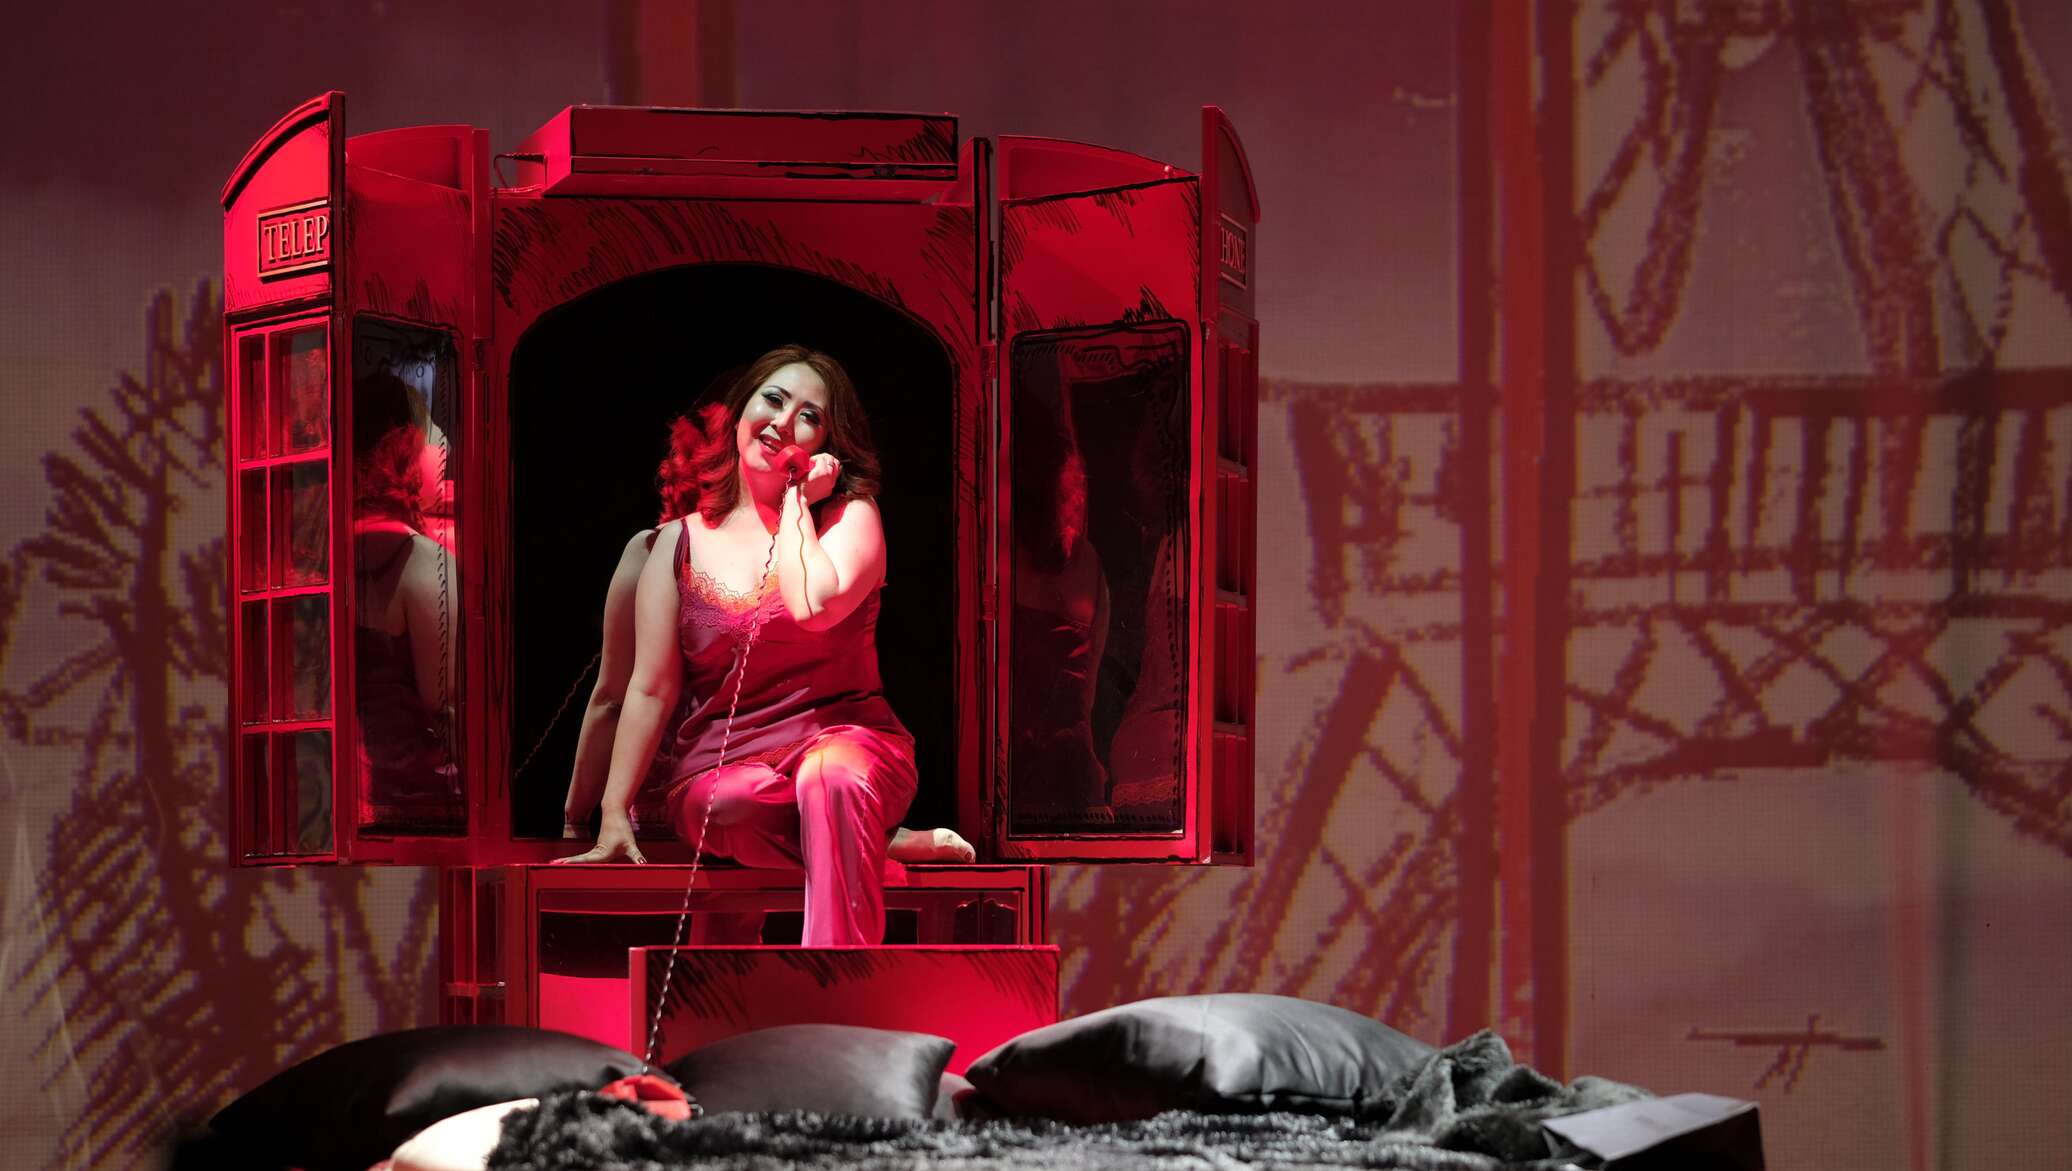 "Плачет девушка в автомате": спектакль из трех моноопер показали в алматинском ГАТОБе